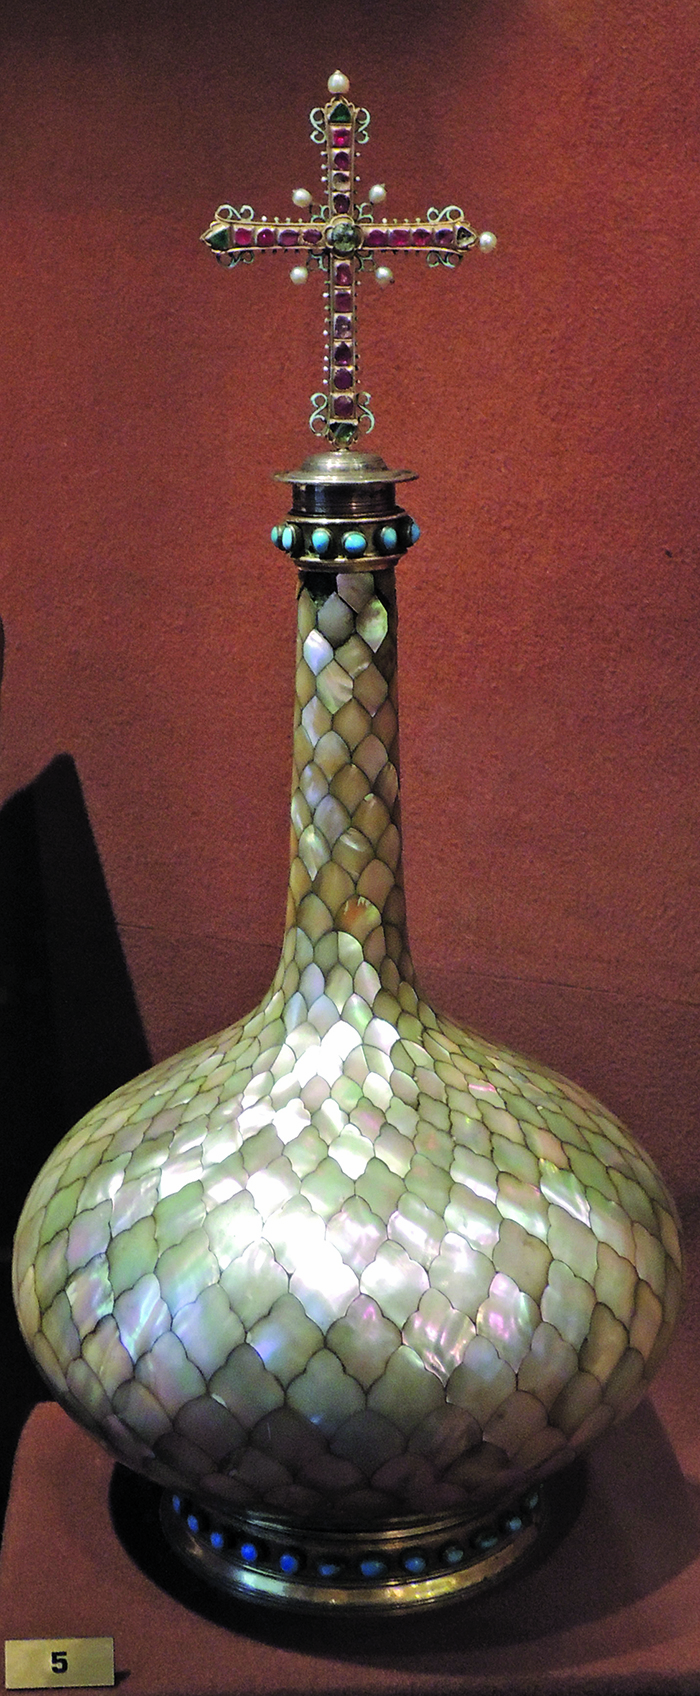 ალებასტრის ჭურჭელი, რომლისგანაც სცხებდნენ რუსეთის მეფეებს ზეთს. ამჟამად ინახება კრემლის მუზეუმში